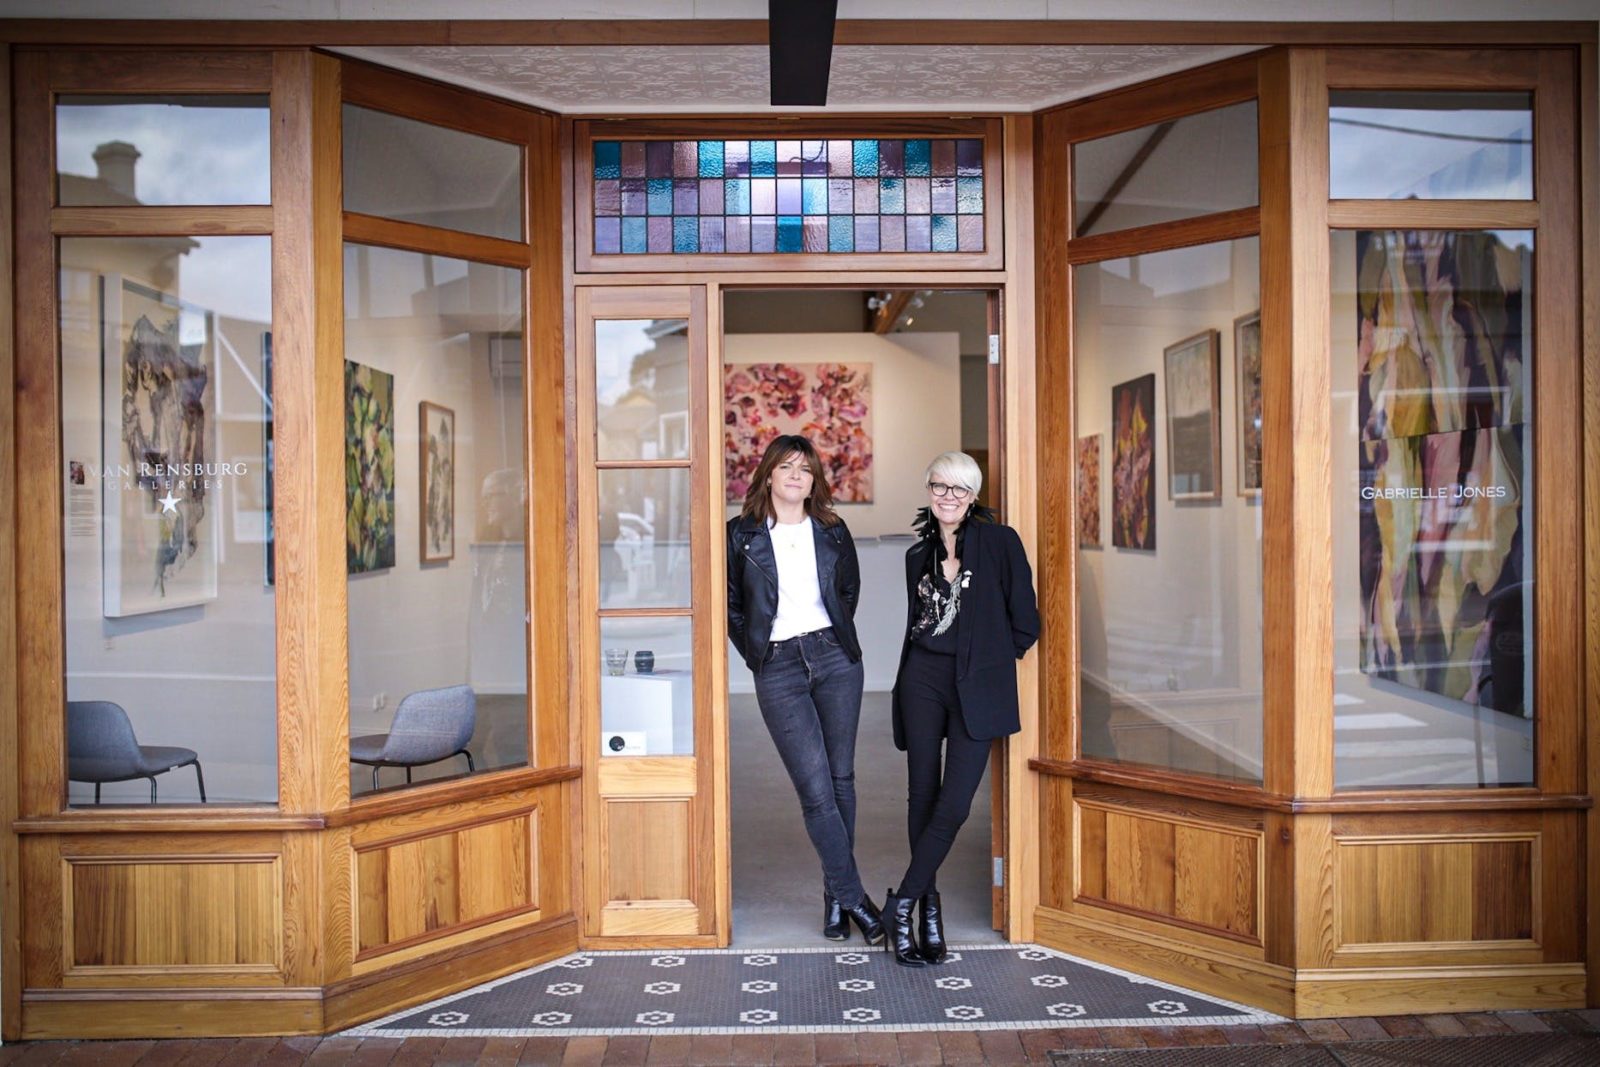 photograph features Beulah & Sarah directors at Van Rensburg galleries